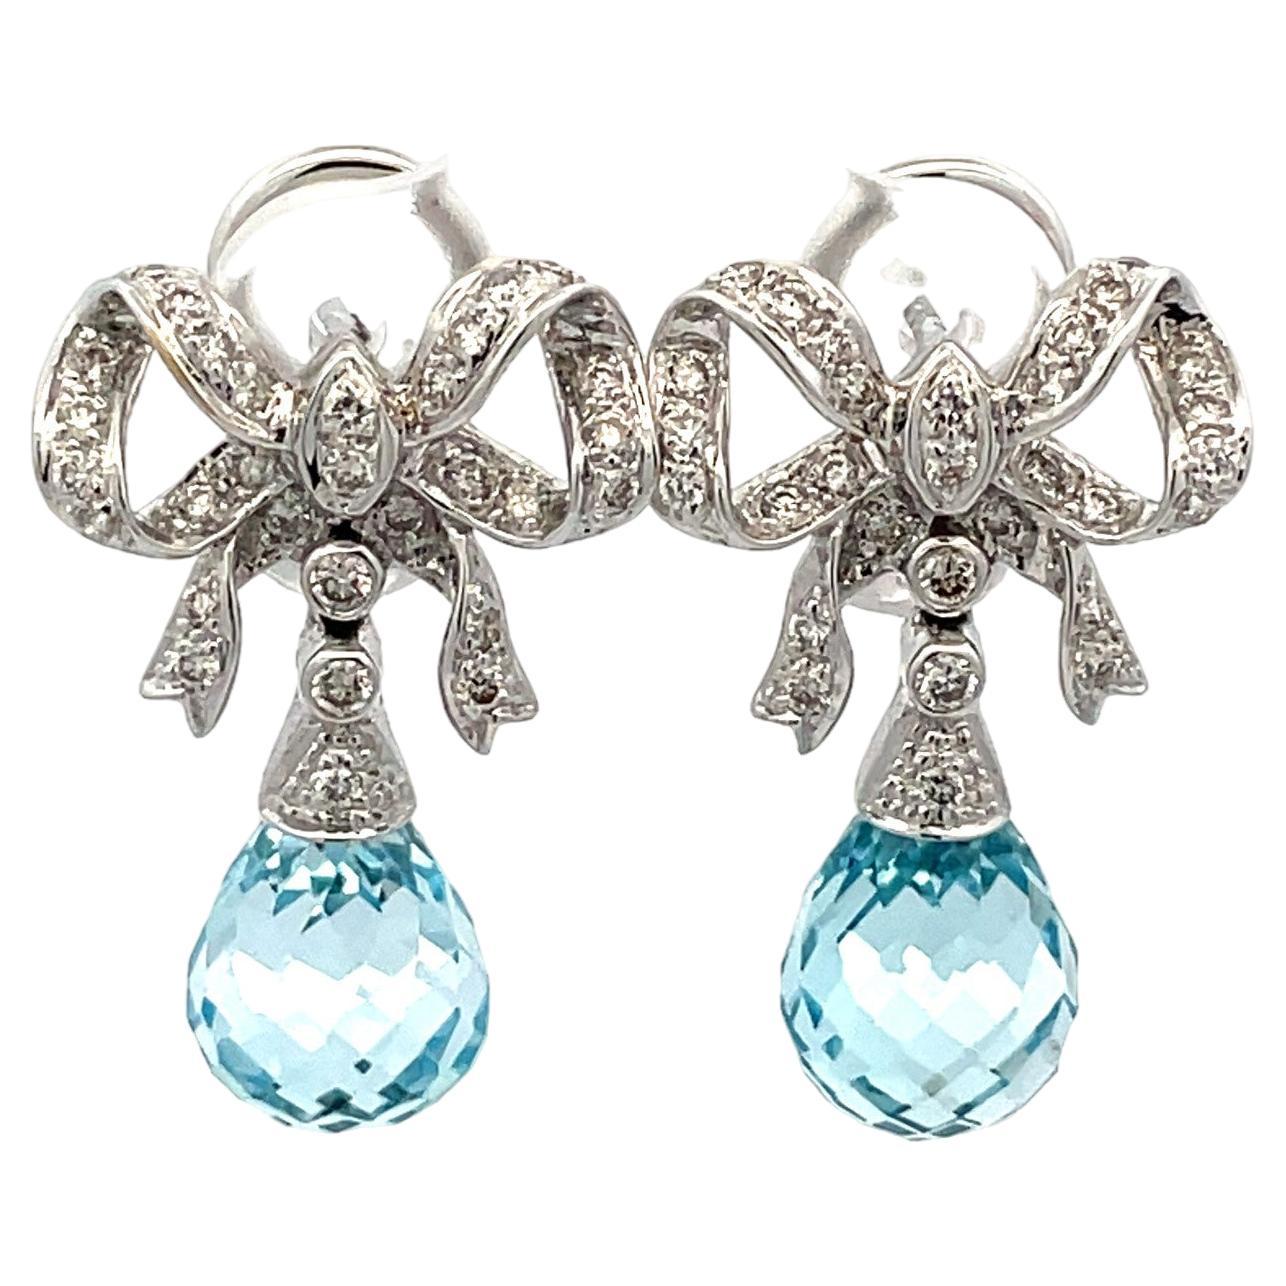 Blue Topaz Briolette And Diamond Bow Earrings in 18 Karat White Gold